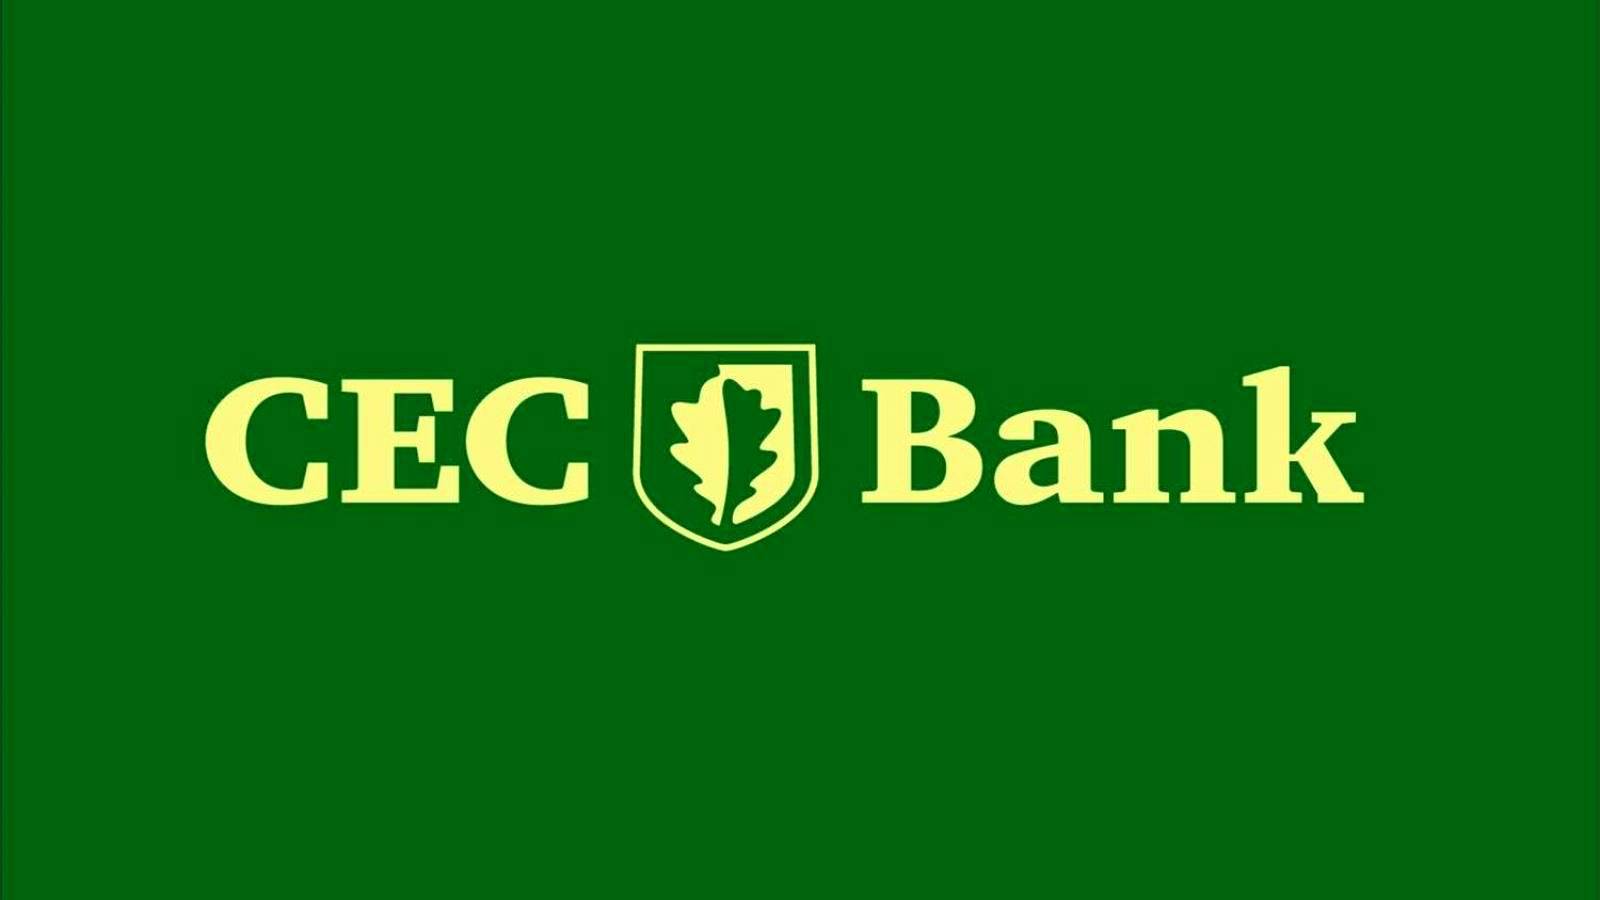 Decisión IMPORTANTE del Banco CEC para los clientes anunciada oficialmente